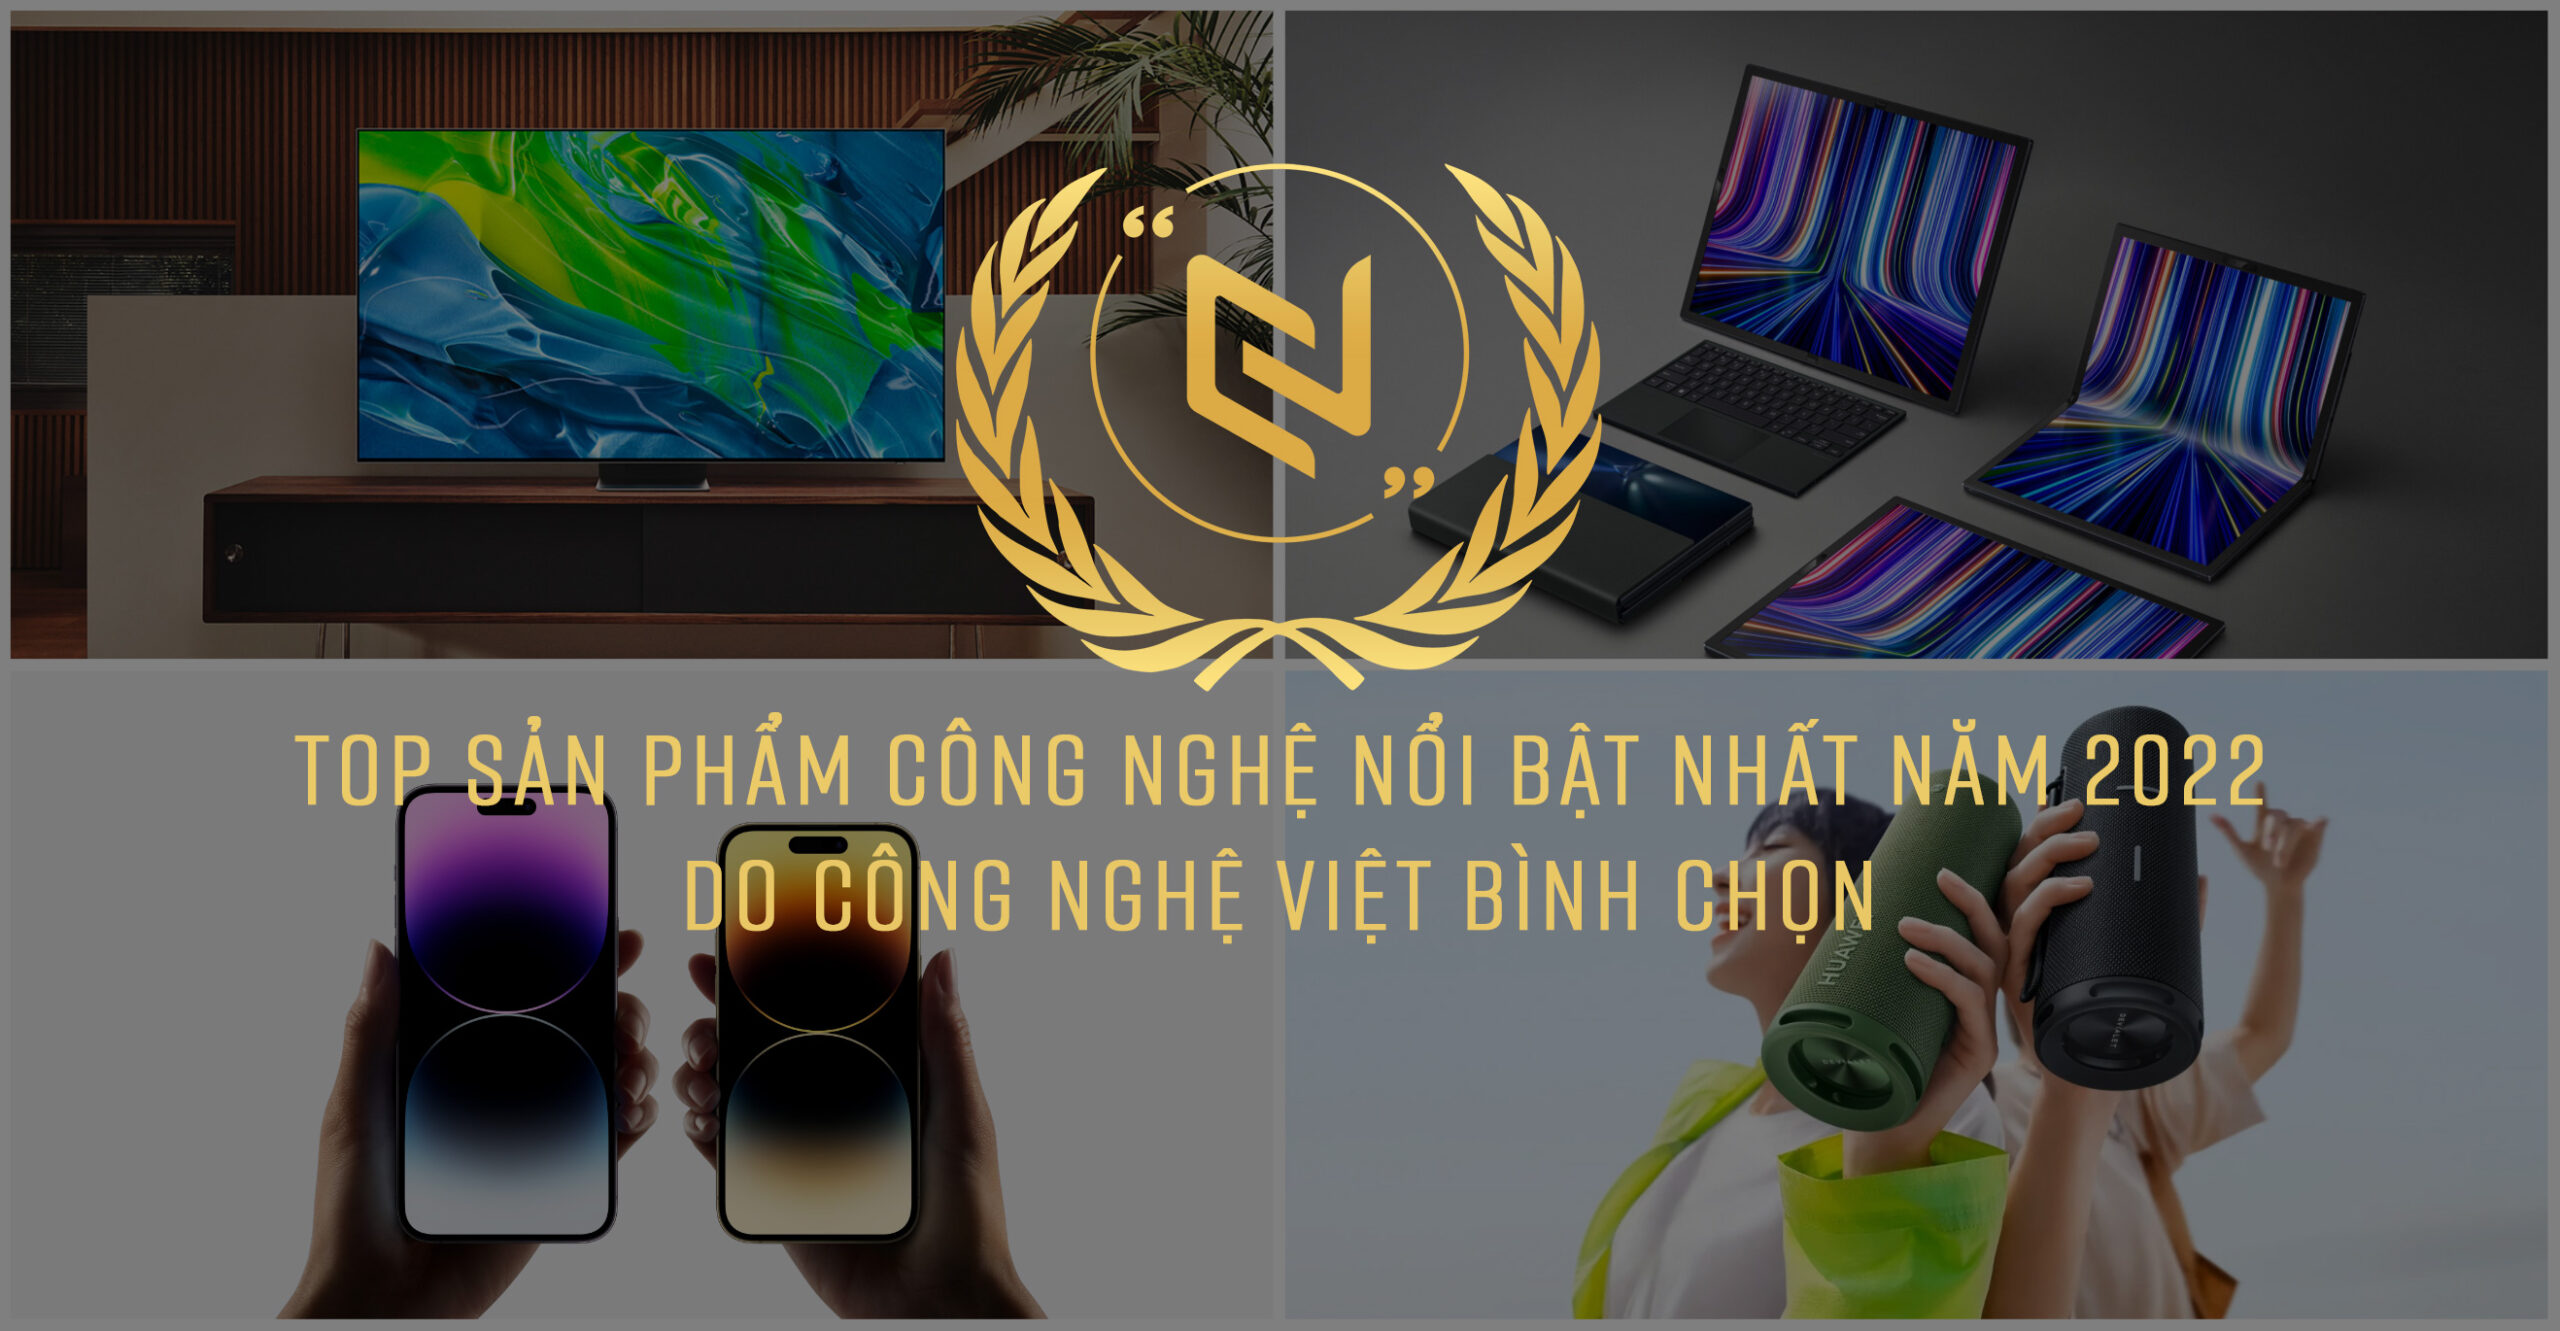 Top sản phẩm công nghệ ấn tượng nhất năm 2022 do Công Nghệ Việt bình chọn